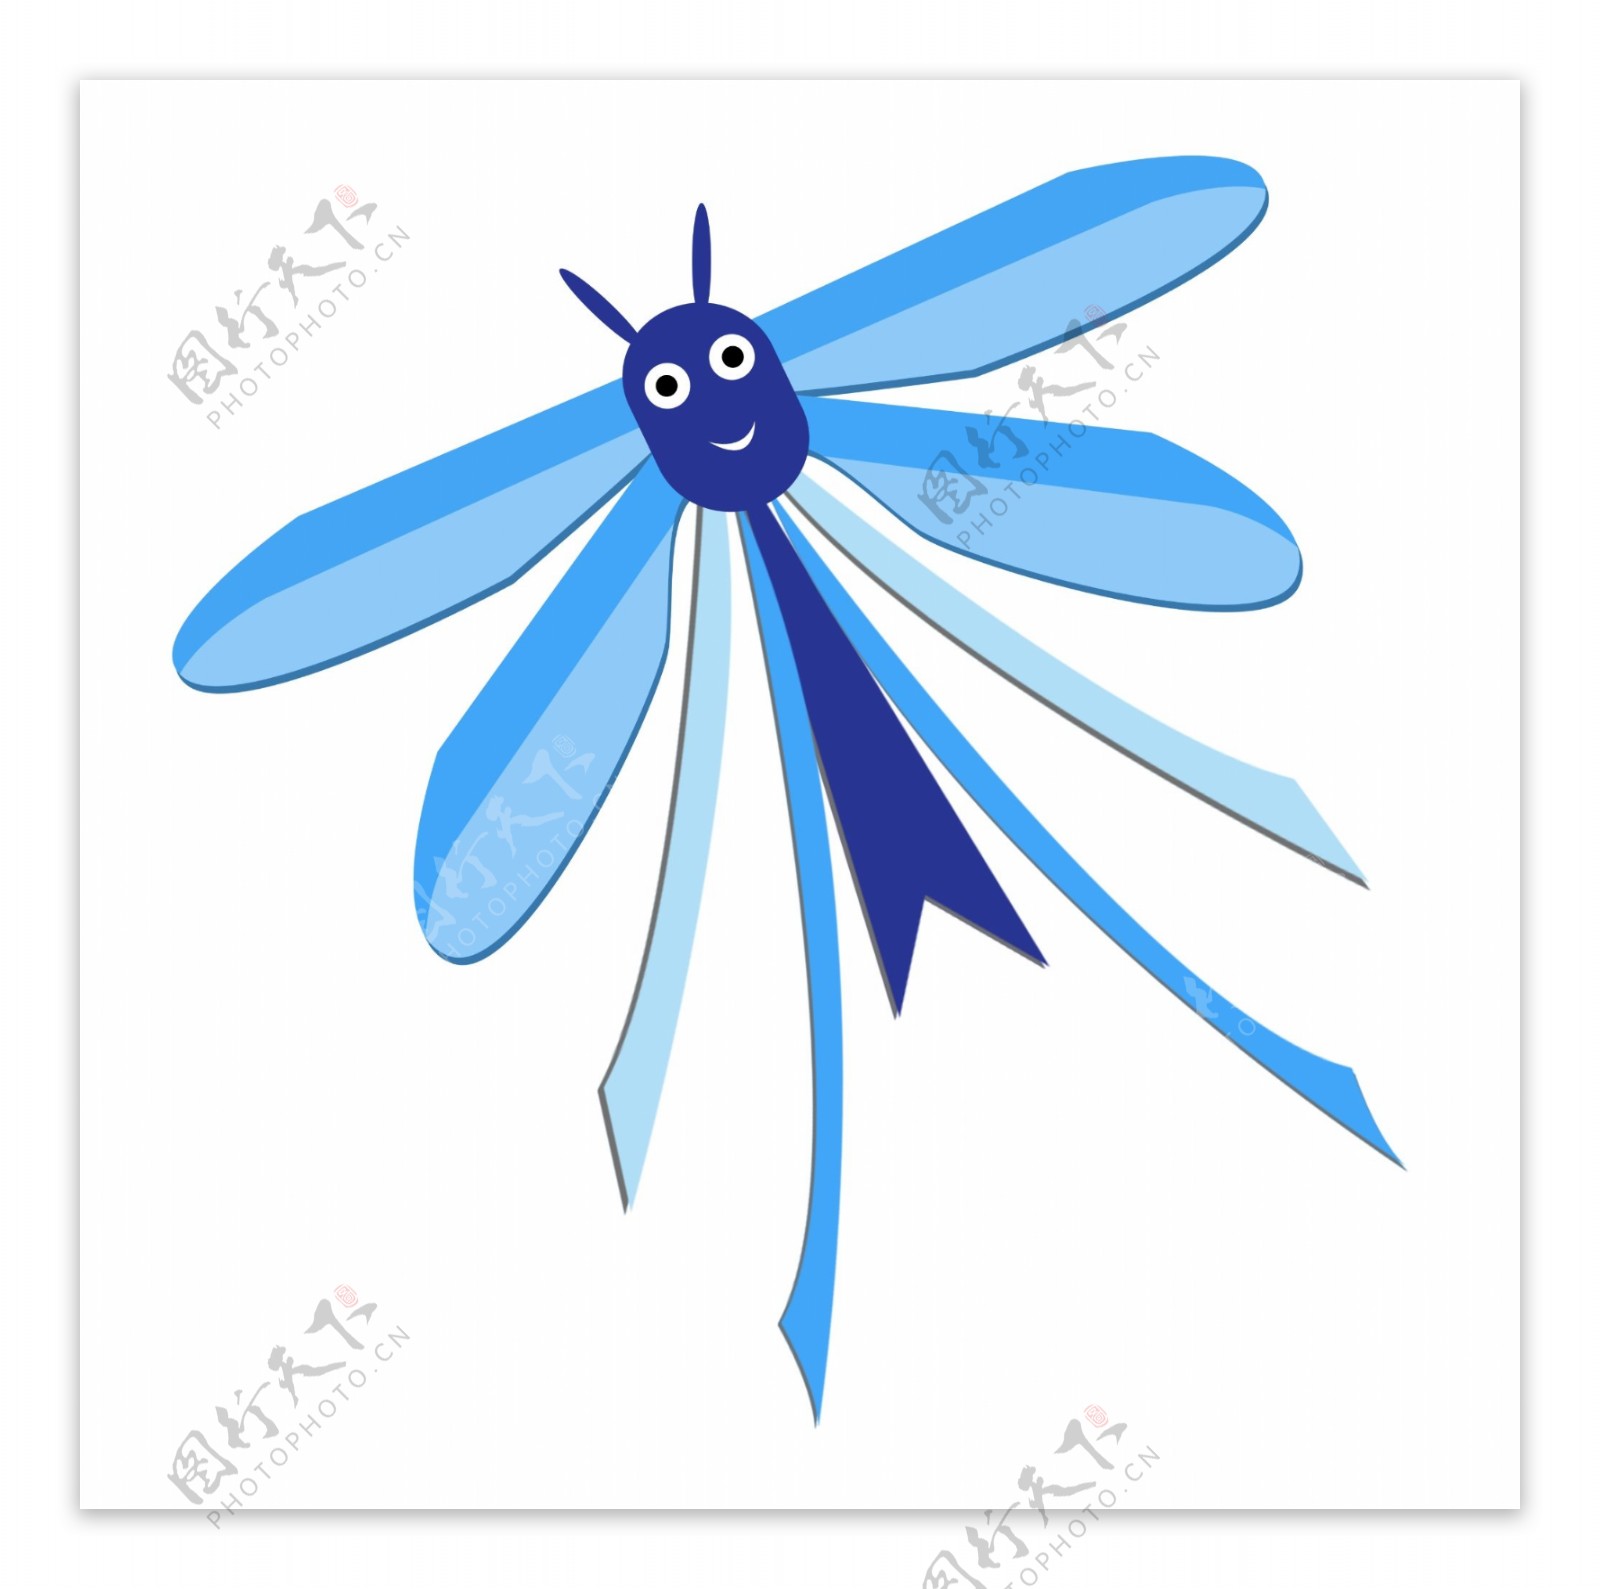 蓝色蜻蜓图案风筝